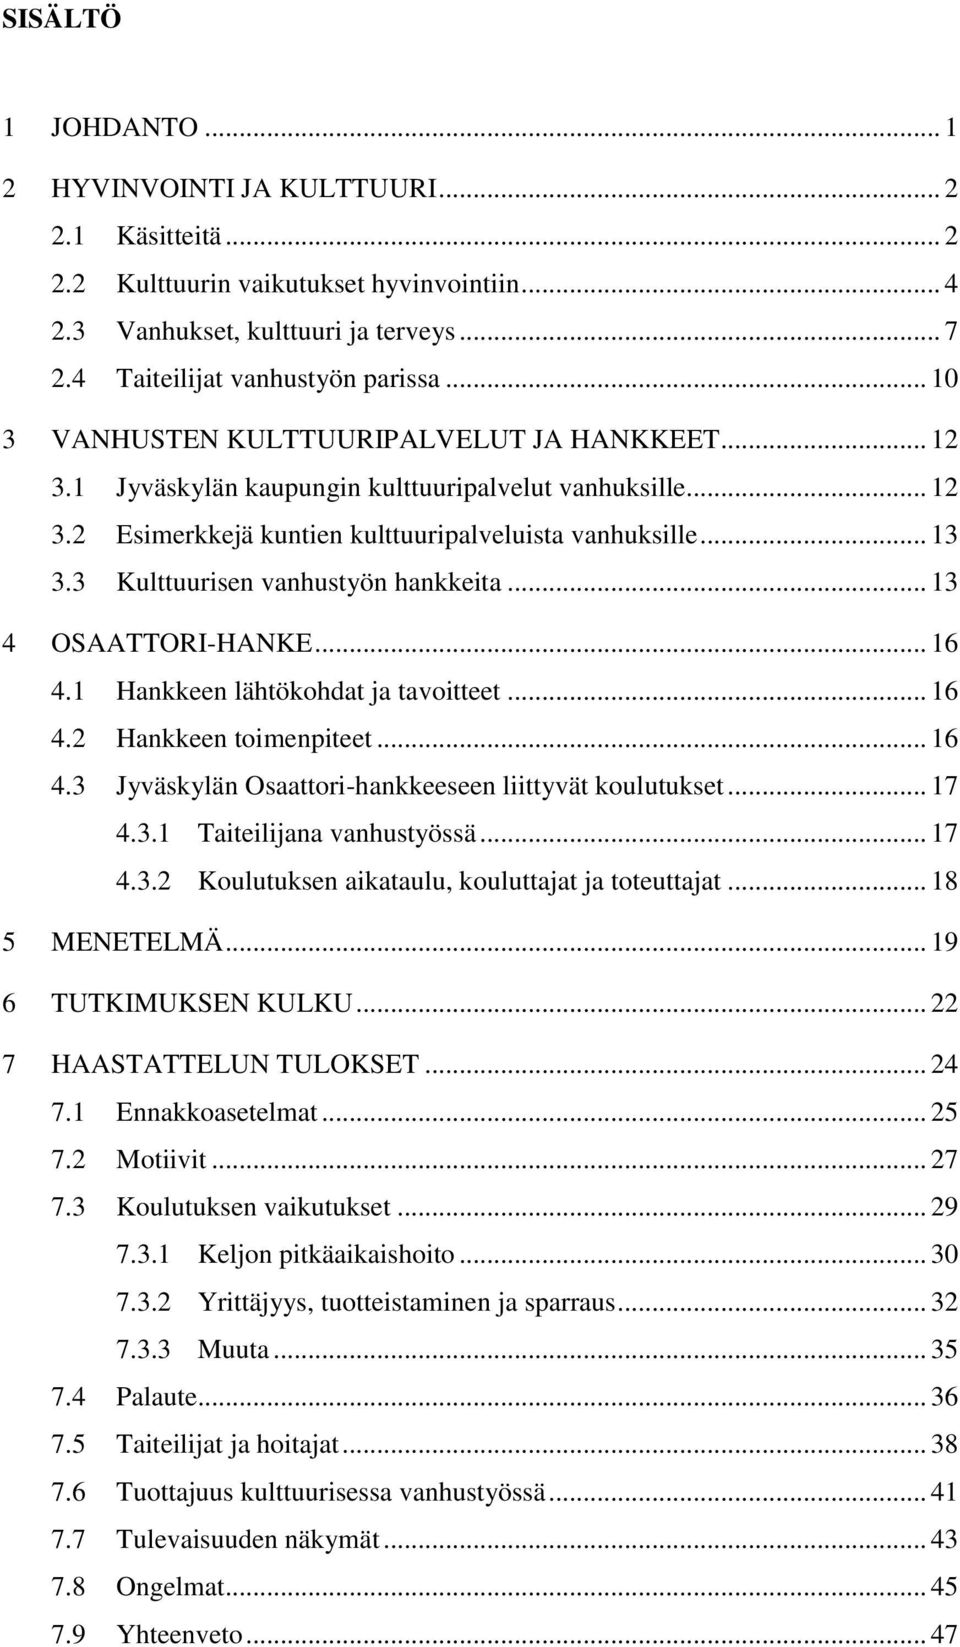 3 Kulttuurisen vanhustyön hankkeita... 13 4 OSAATTORI-HANKE... 16 4.1 Hankkeen lähtökohdat ja tavoitteet... 16 4.2 Hankkeen toimenpiteet... 16 4.3 Jyväskylän Osaattori-hankkeeseen liittyvät koulutukset.